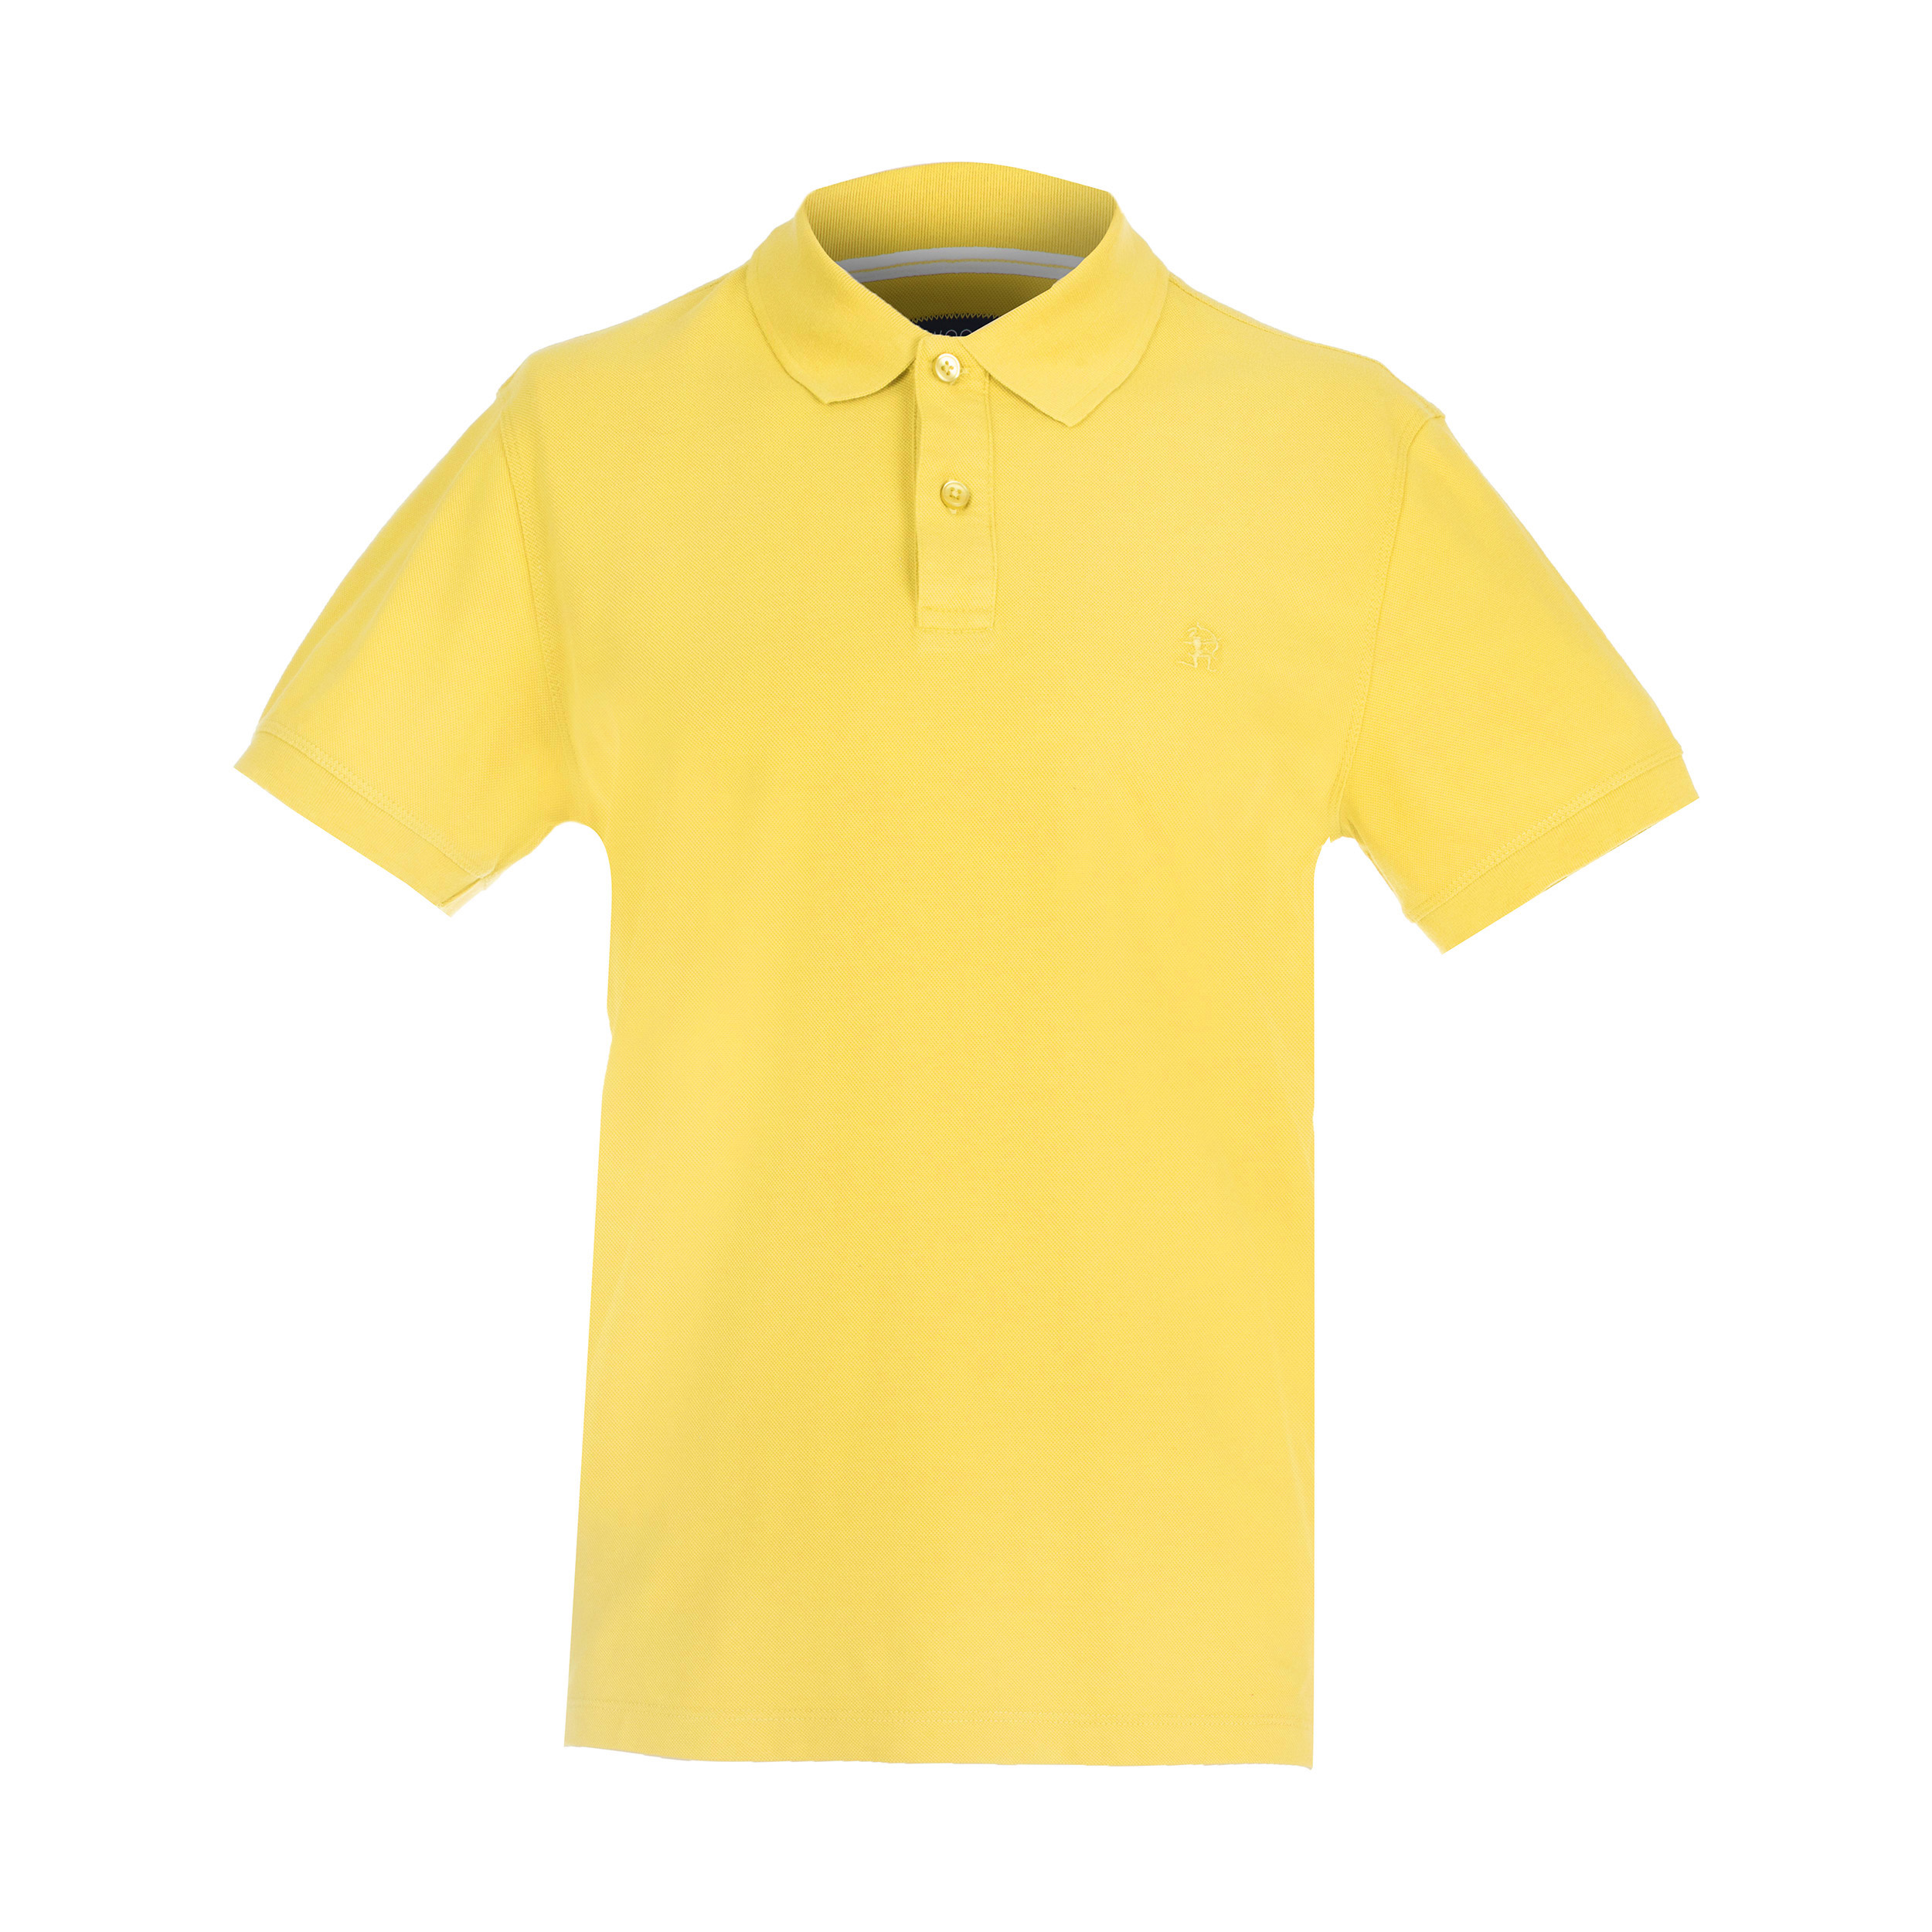 تی شرت مردانه سیاوود کد 7120415 رنگ زرد -  - 1